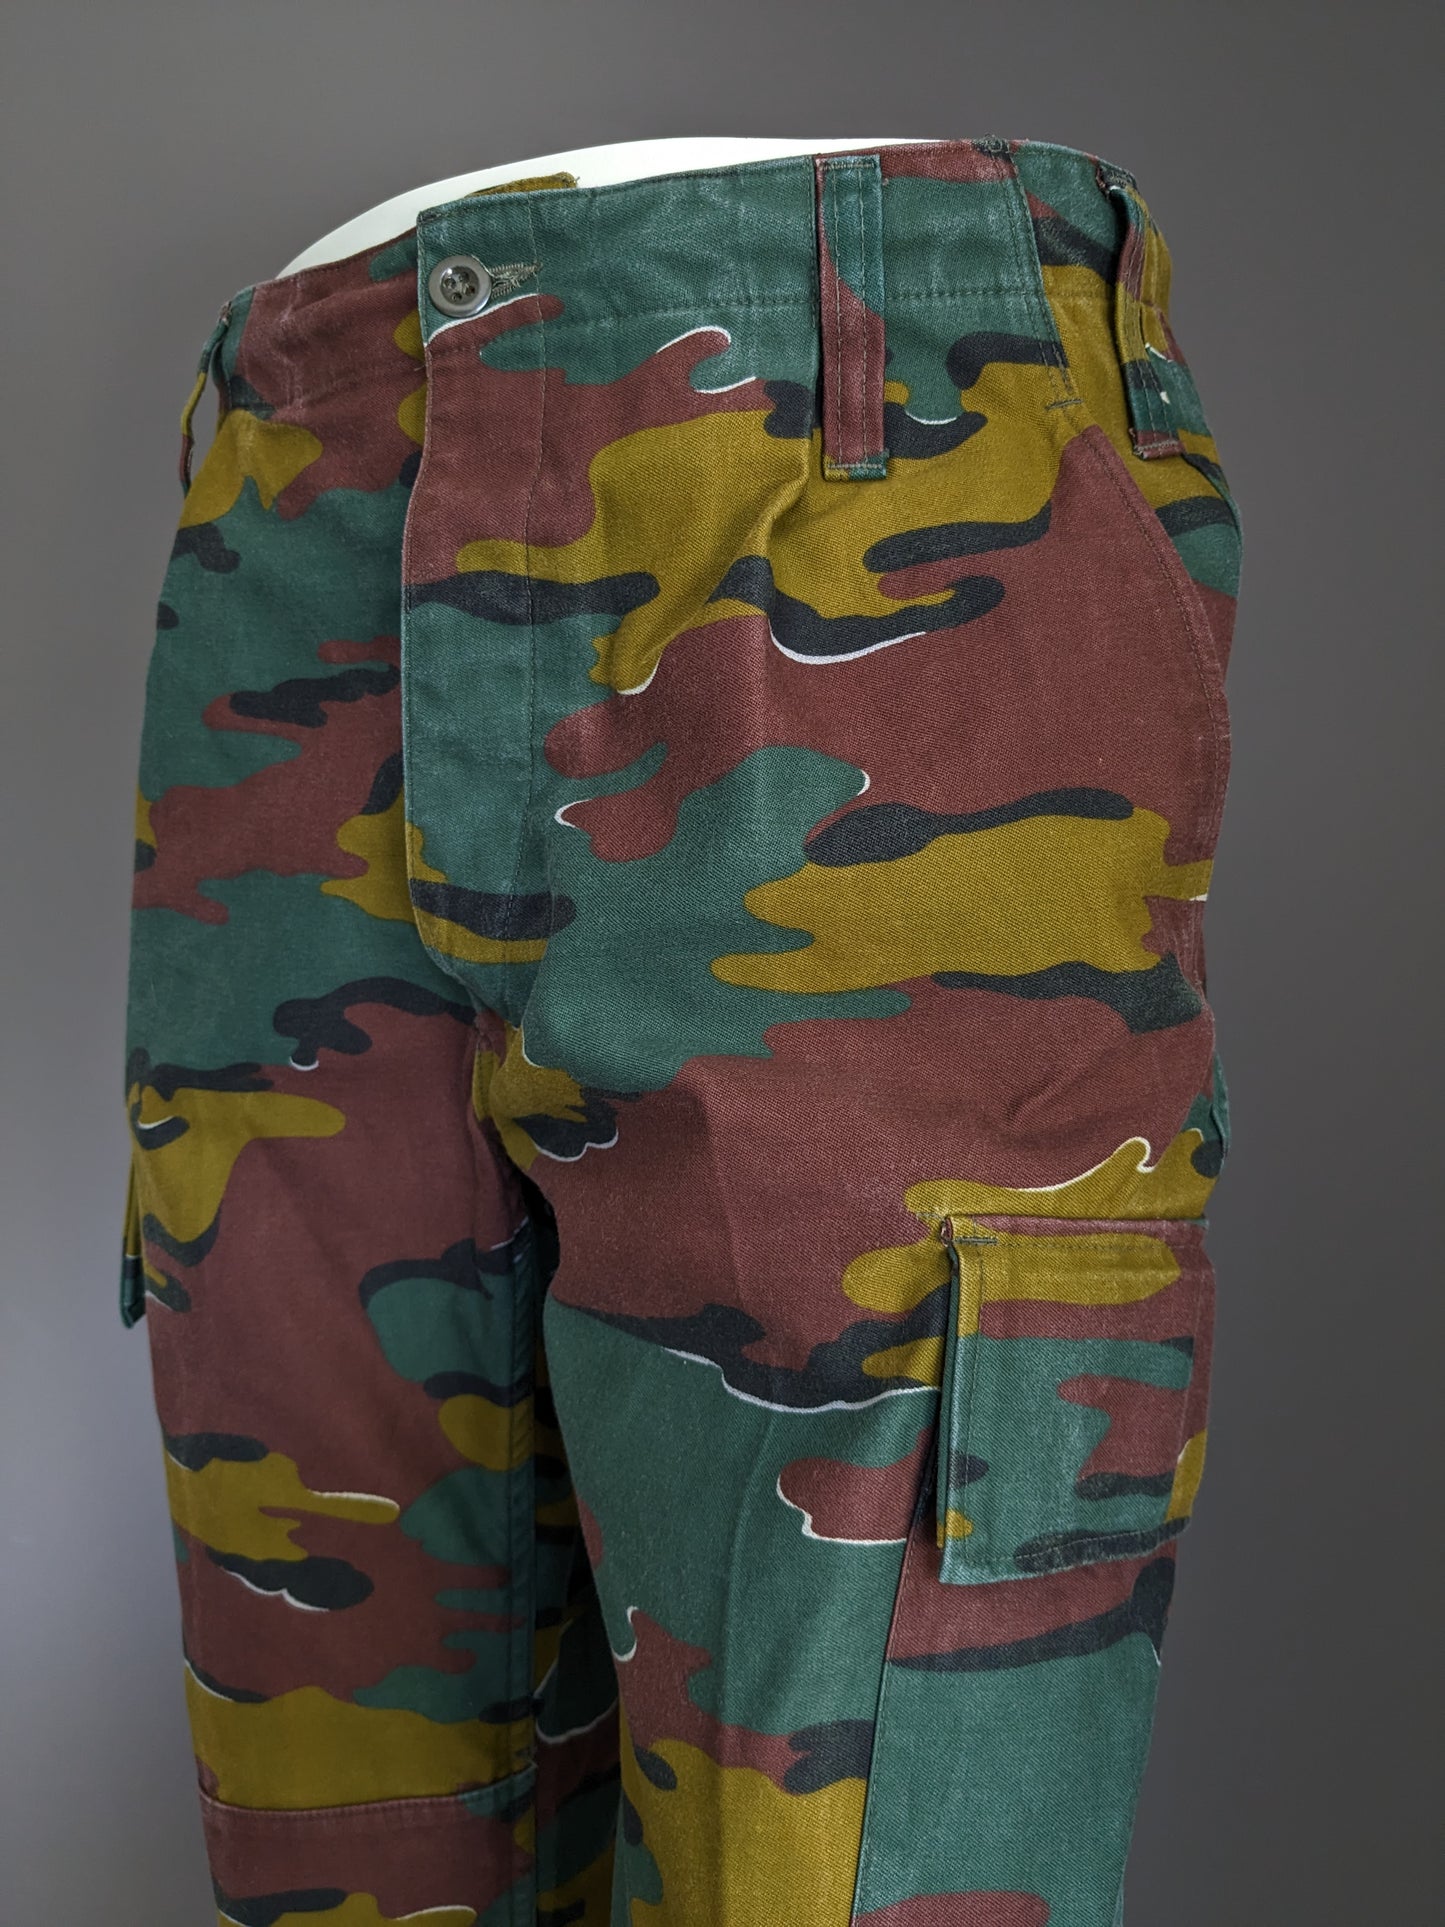 Army / Leger broek. Bruin Groene camouflage print. Maat M / L.